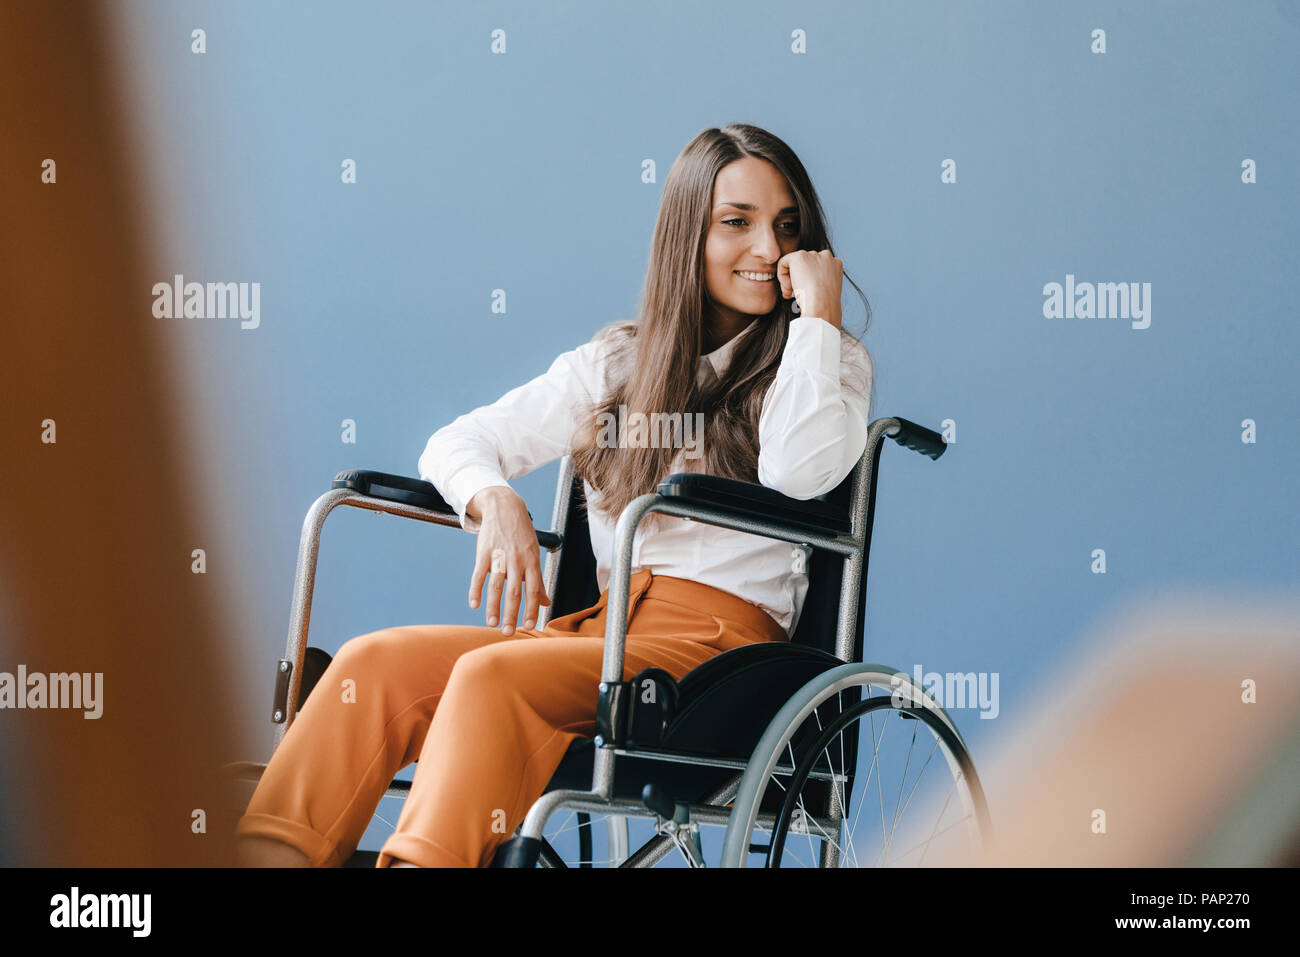 Jeunes Handicapés woman sitting in wheelchair, smiling Banque D'Images